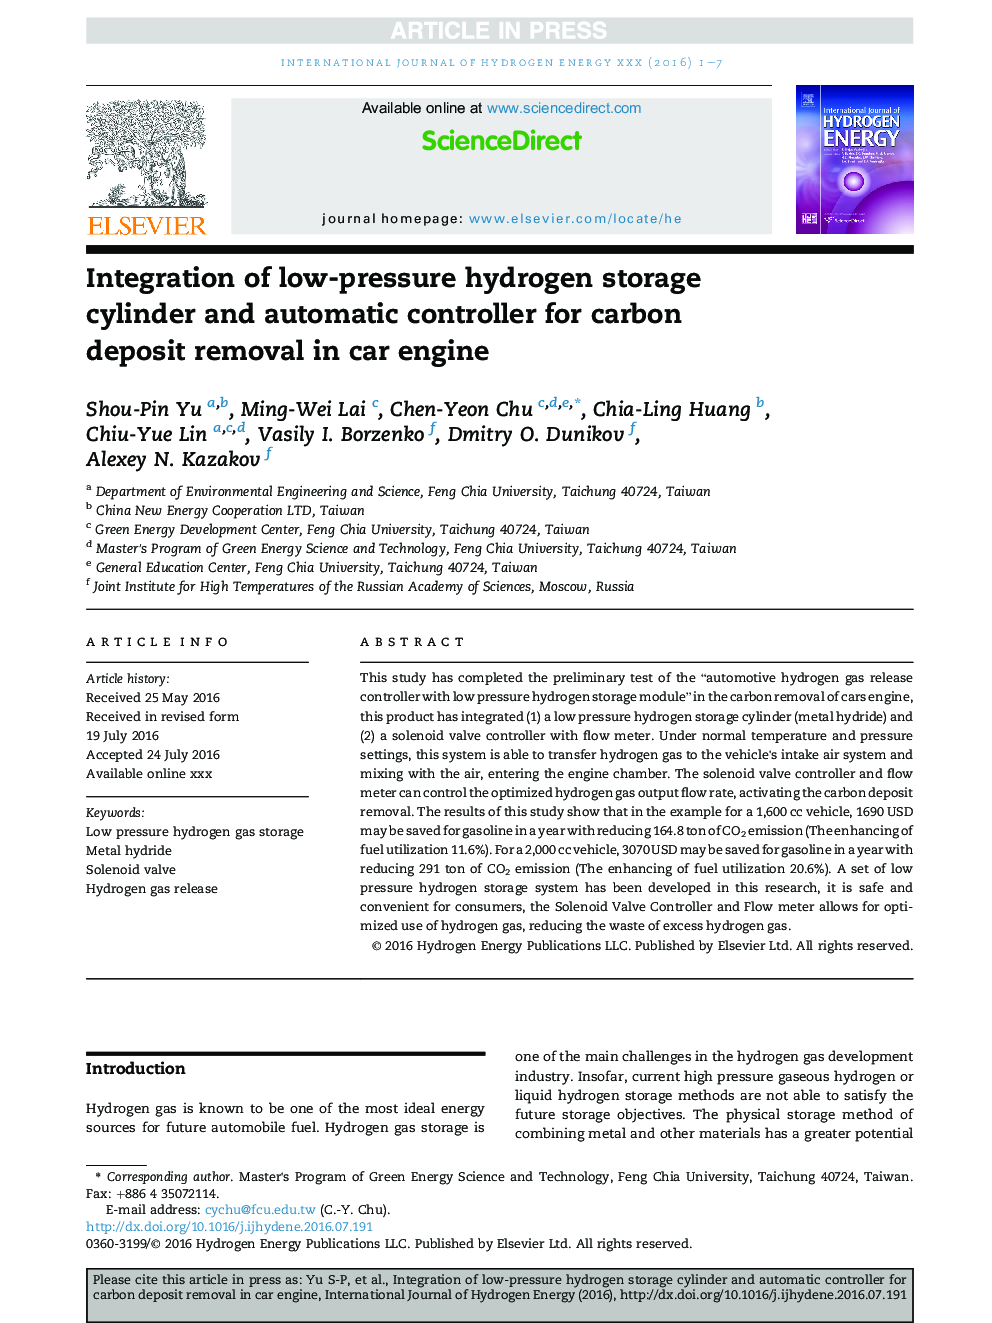 یکپارچه سازی سیلندر ذخیره سازی هیدروژن کم فشار و کنترل اتوماتیک برای حذف کربن سپرده در موتور خودرو 